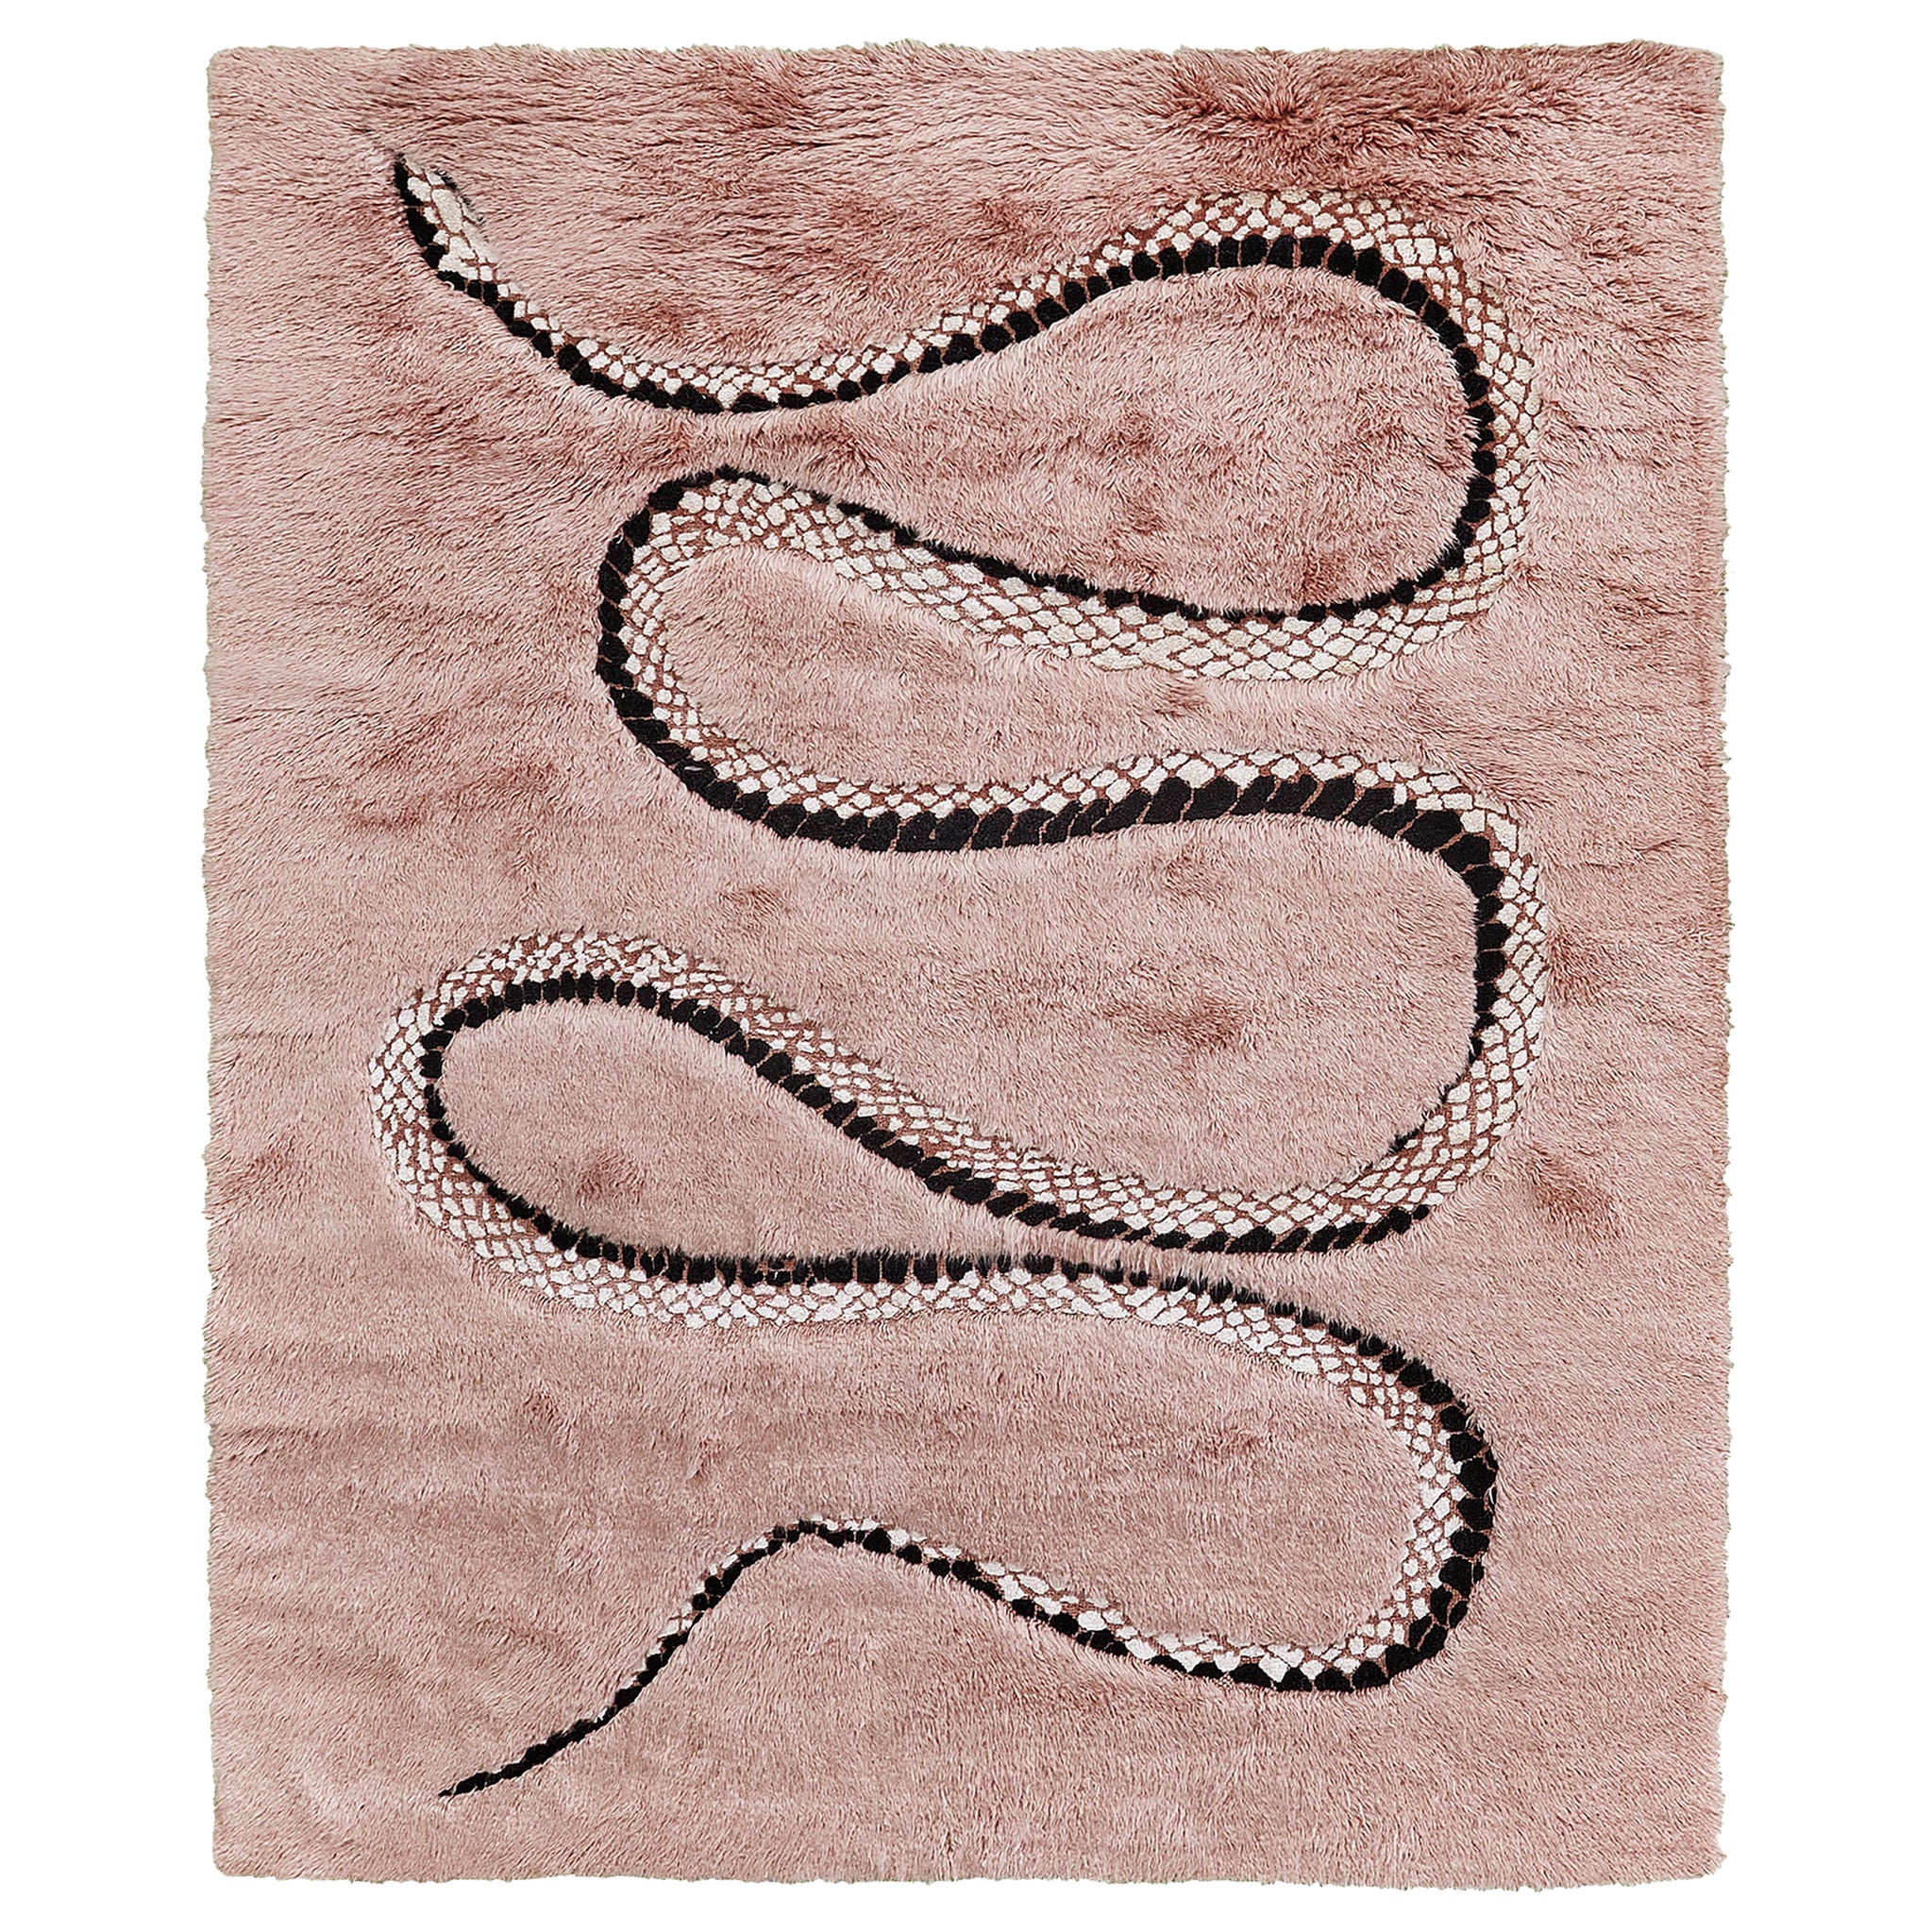 Mehraban Year of the Snake (Année du serpent) par Liesel Plambeck en vente